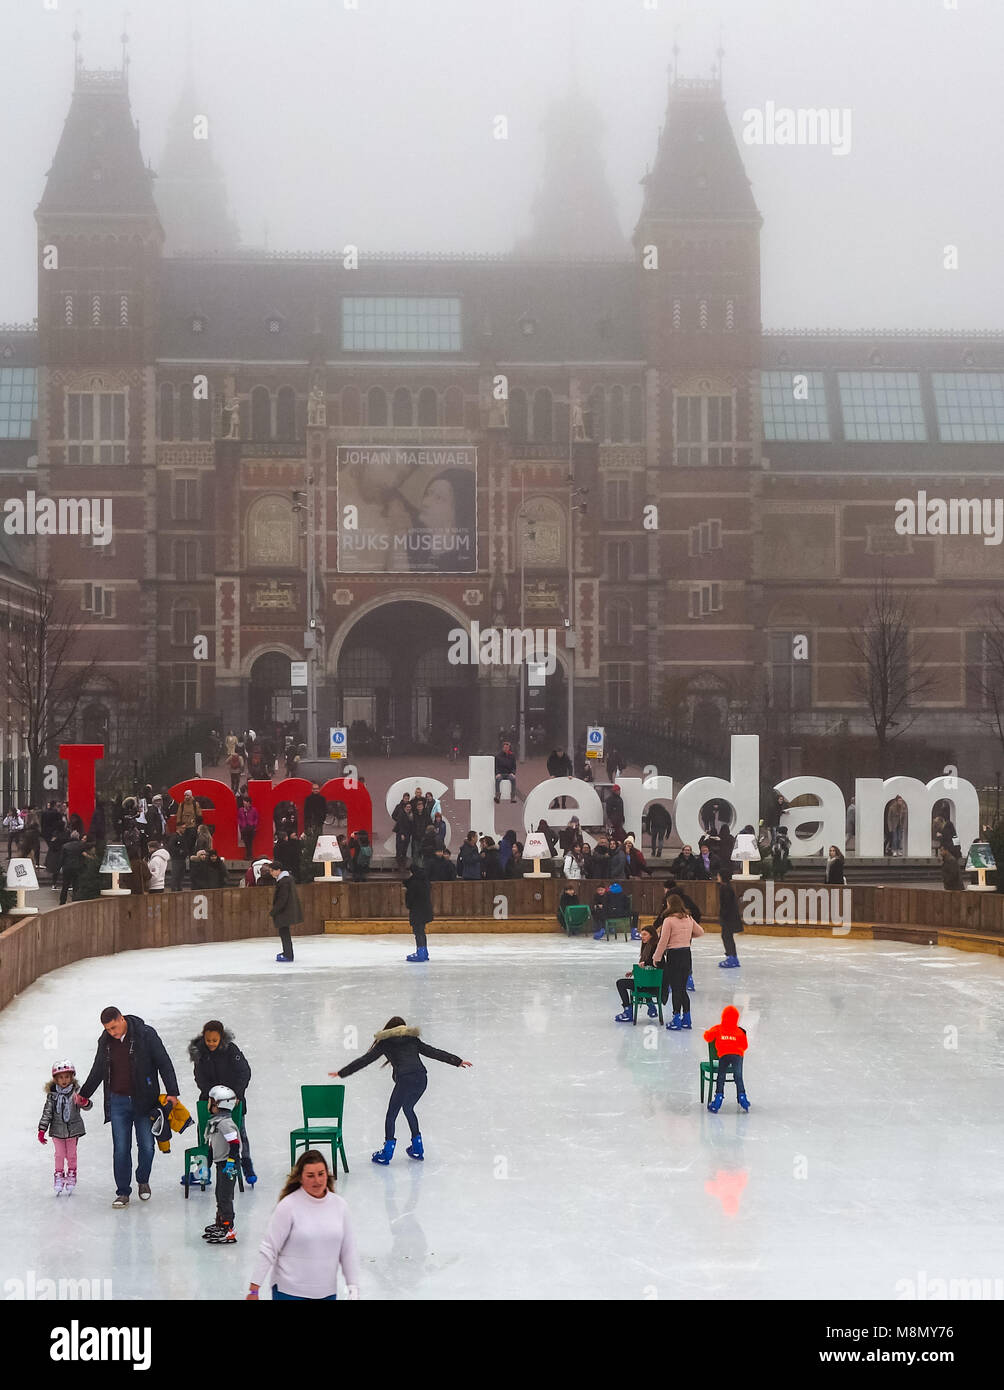 Dec 20, 2017 - Les personnes bénéficiant du patin à glace dans les jardins du Musée Rijksmuseum, Amsterdam, Pays-Bas Banque D'Images